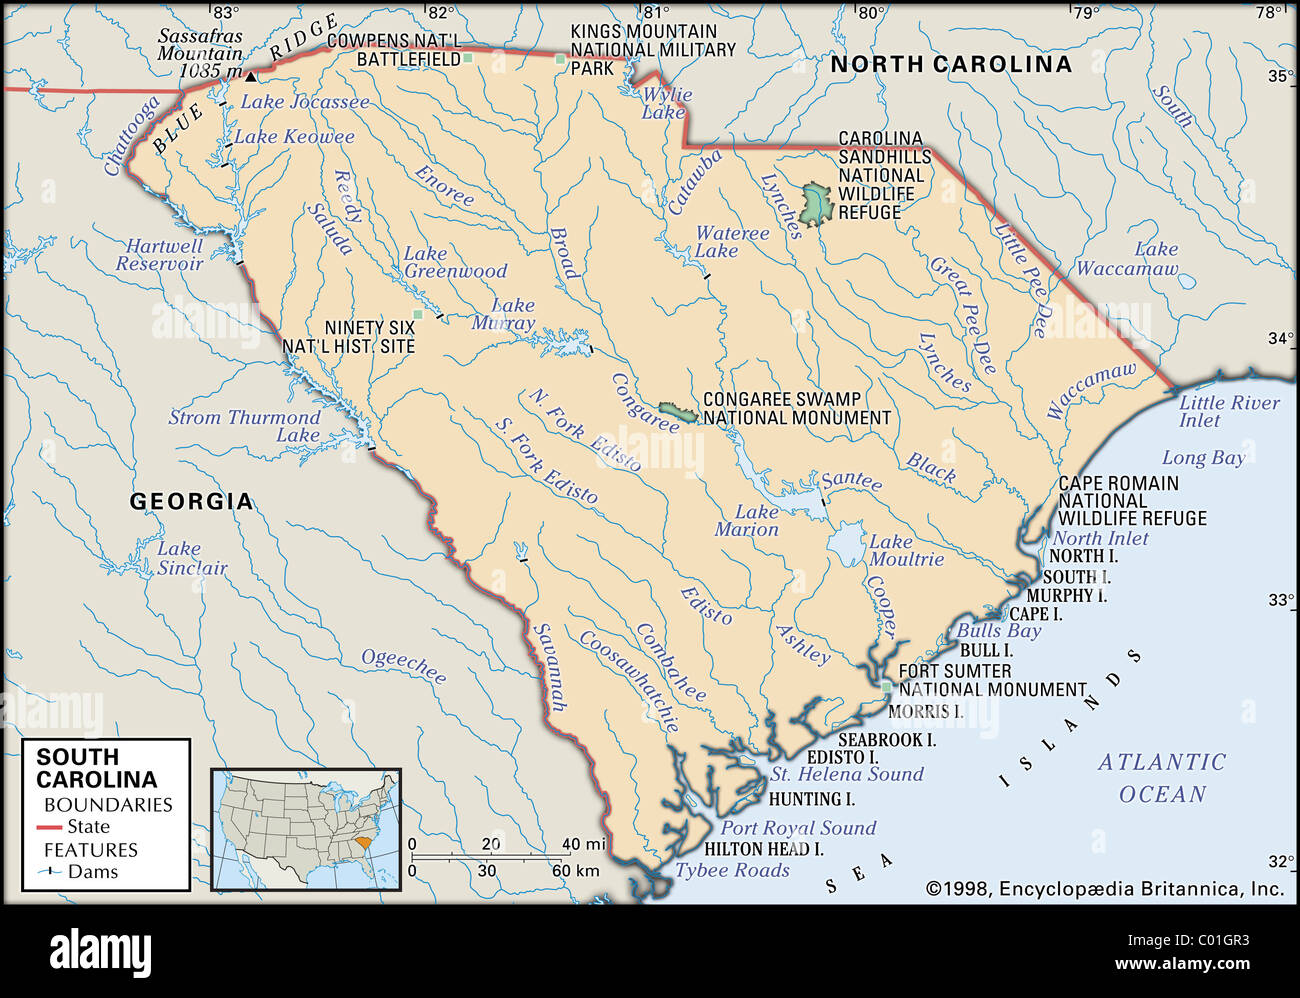 Mapa Físico de Carolina del Sur Foto de stock